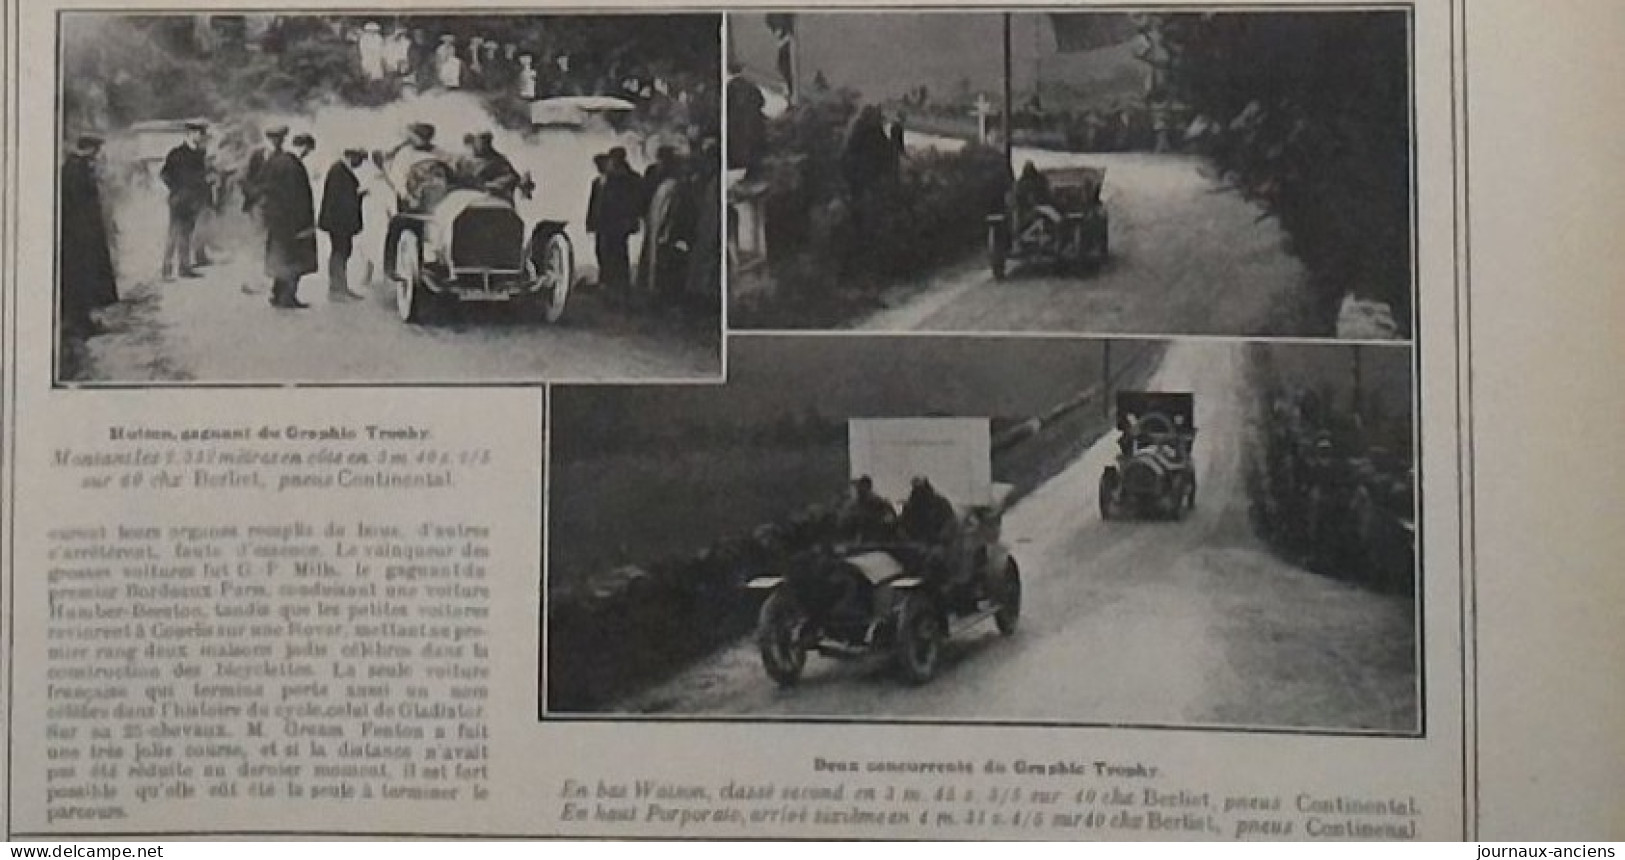 1907 COURSE AUTOMOBILE - LE TOURIST = TROPHY ET LE GRAPHIC = TROPHY - PNEUMATIQUE CONTINENTAL ET DUNLOP - Bücher